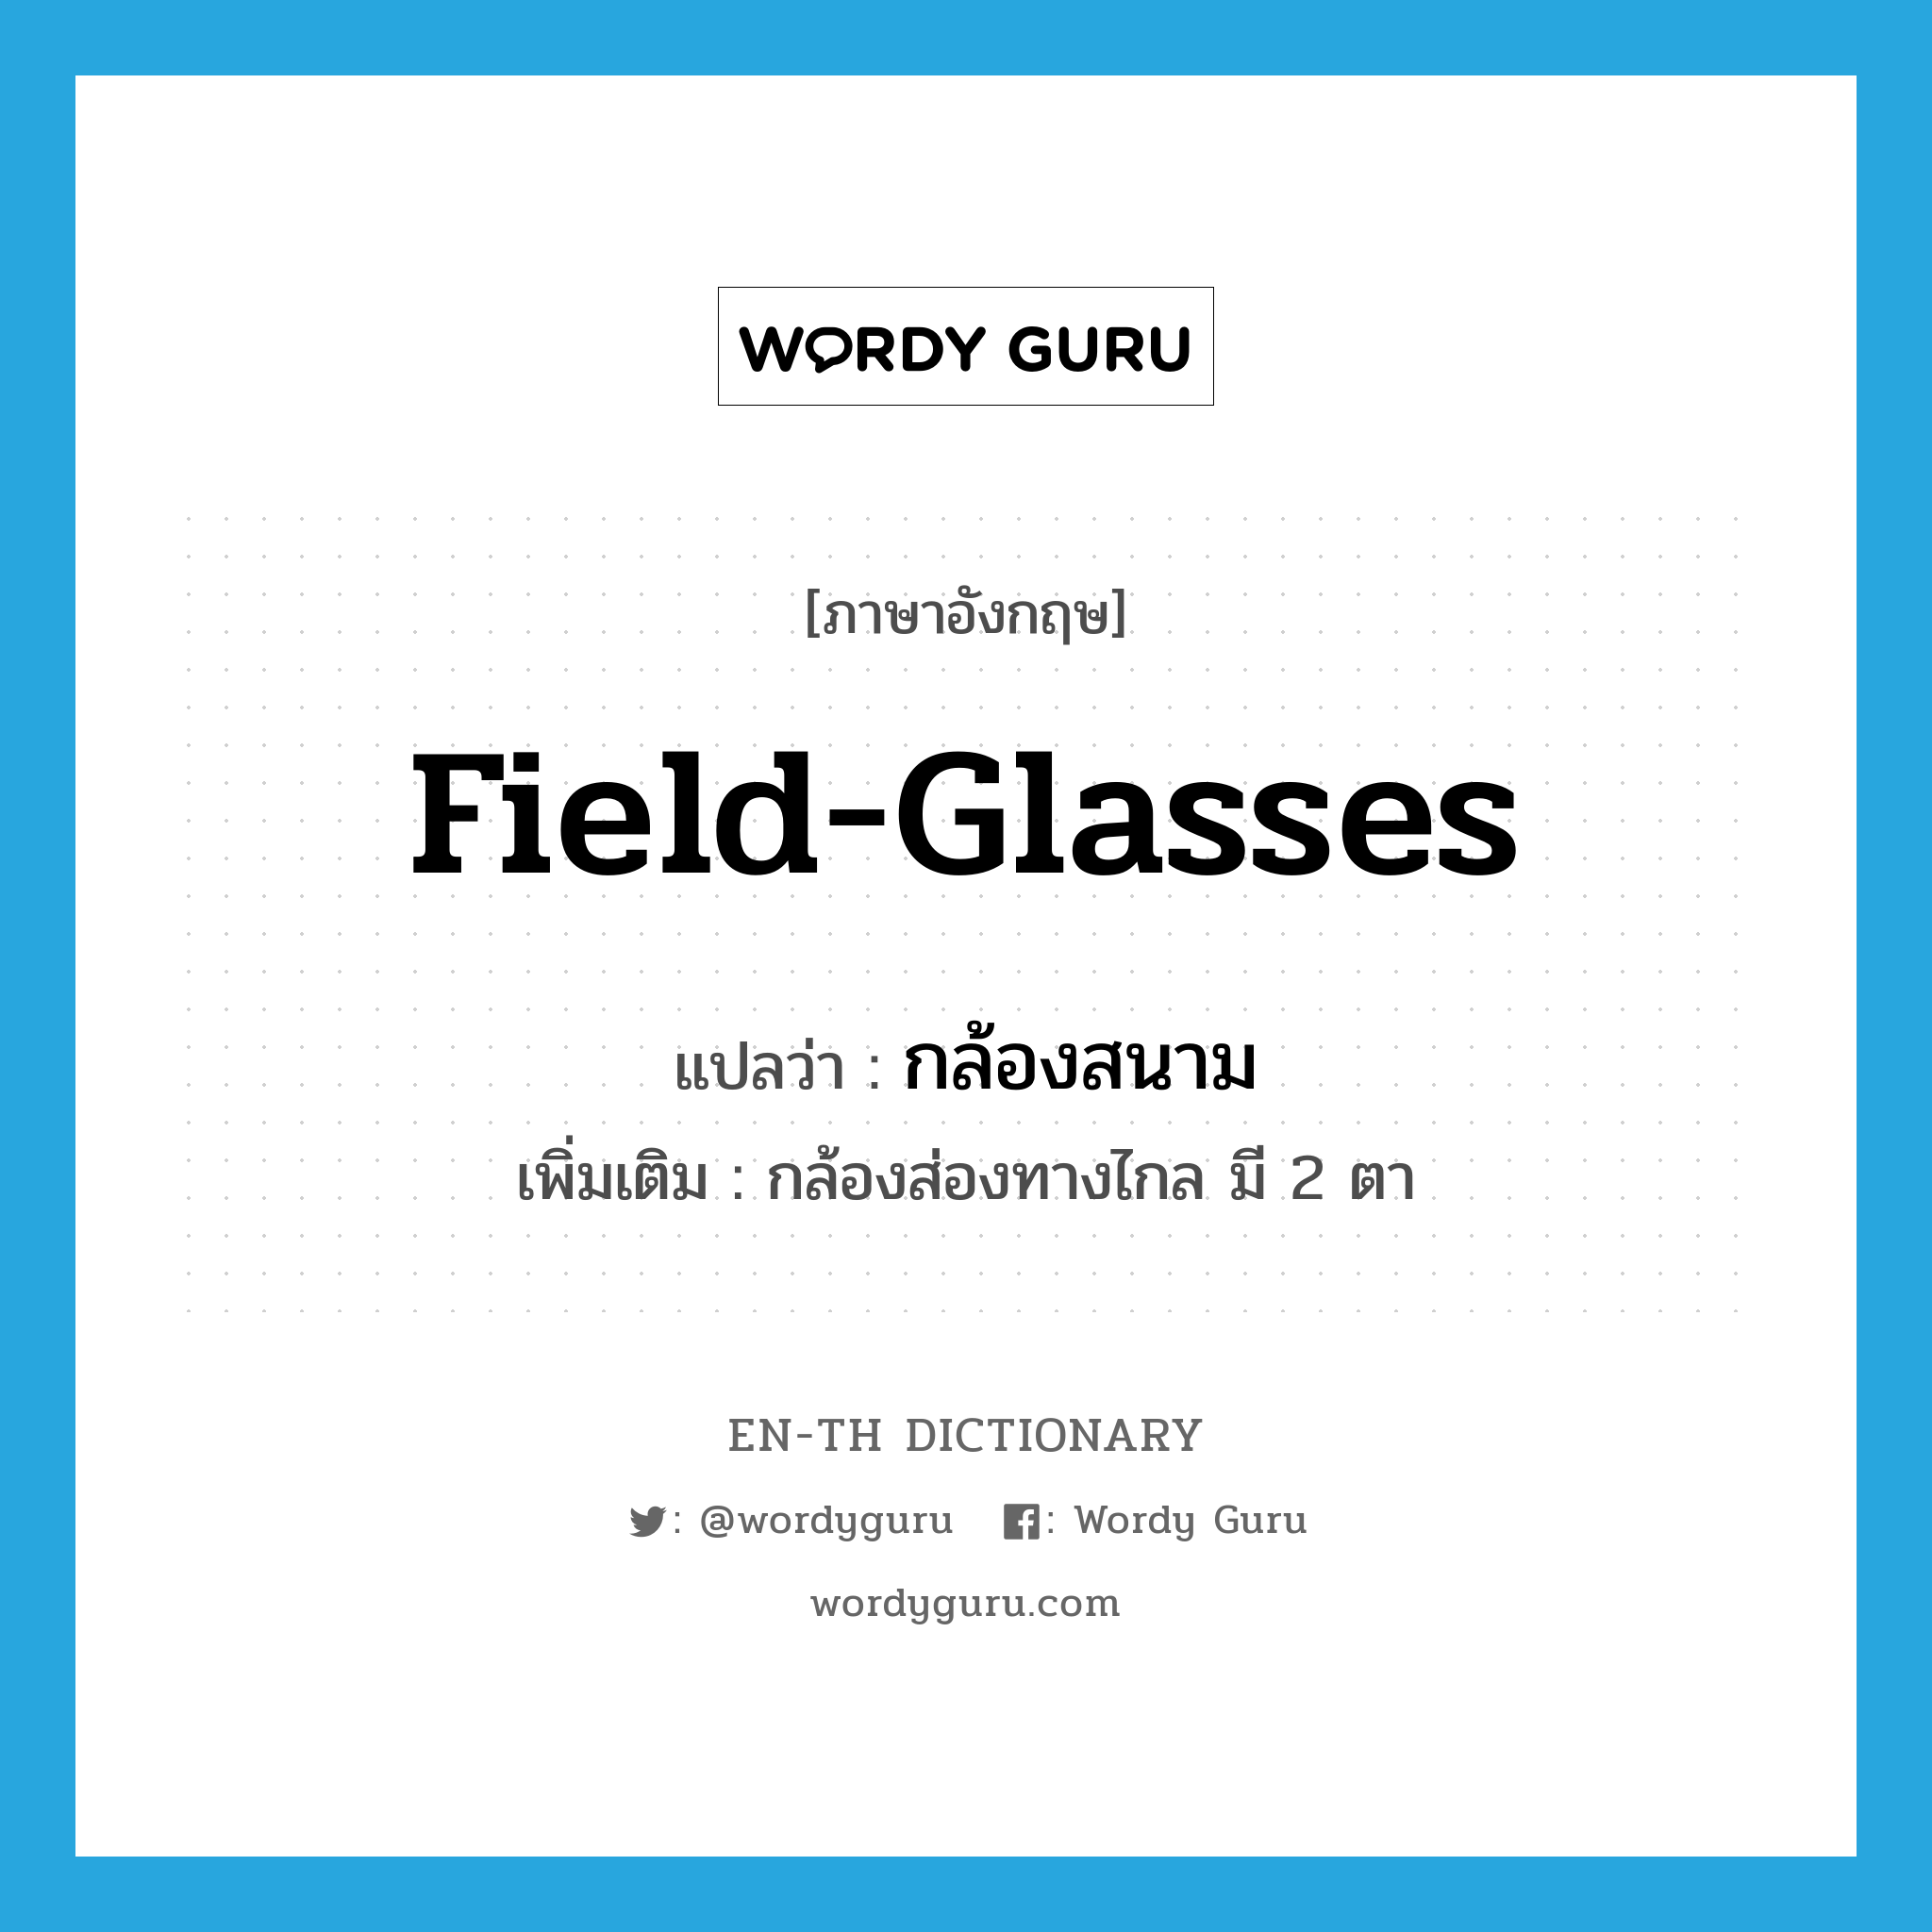 field glasses แปลว่า?, คำศัพท์ภาษาอังกฤษ field-glasses แปลว่า กล้องสนาม ประเภท N เพิ่มเติม กล้องส่องทางไกล มี 2 ตา หมวด N